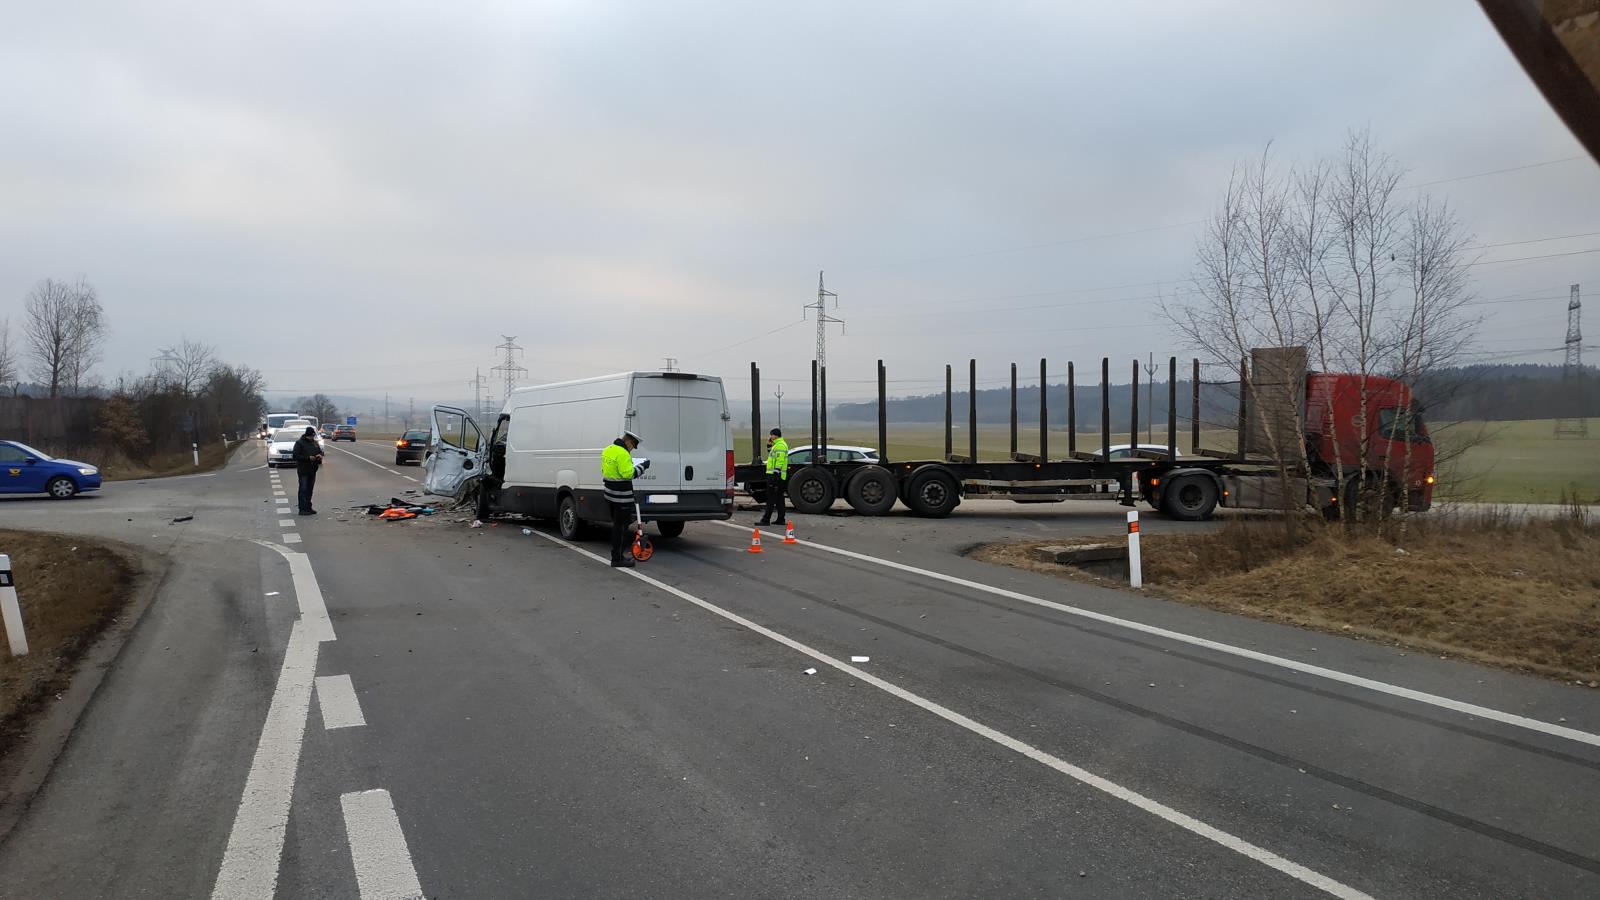 Dopravní nehoda NA a dodávky, Nový Dvůr - 23. 1. 2019 (5).jpg